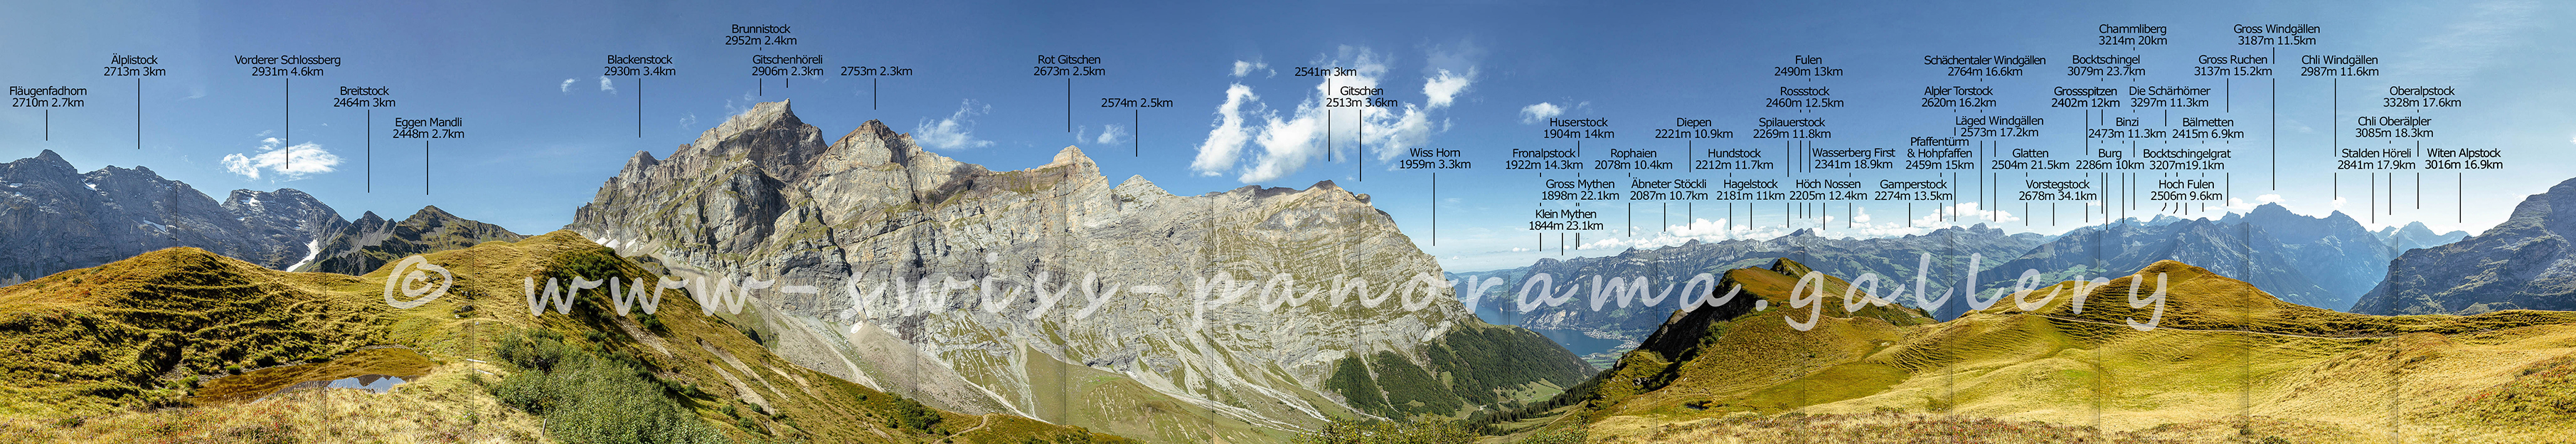 Alpenpanorama von der Alp Grat oberhalb Brüsti, Urner Alpen, swiss-panorama.gallery